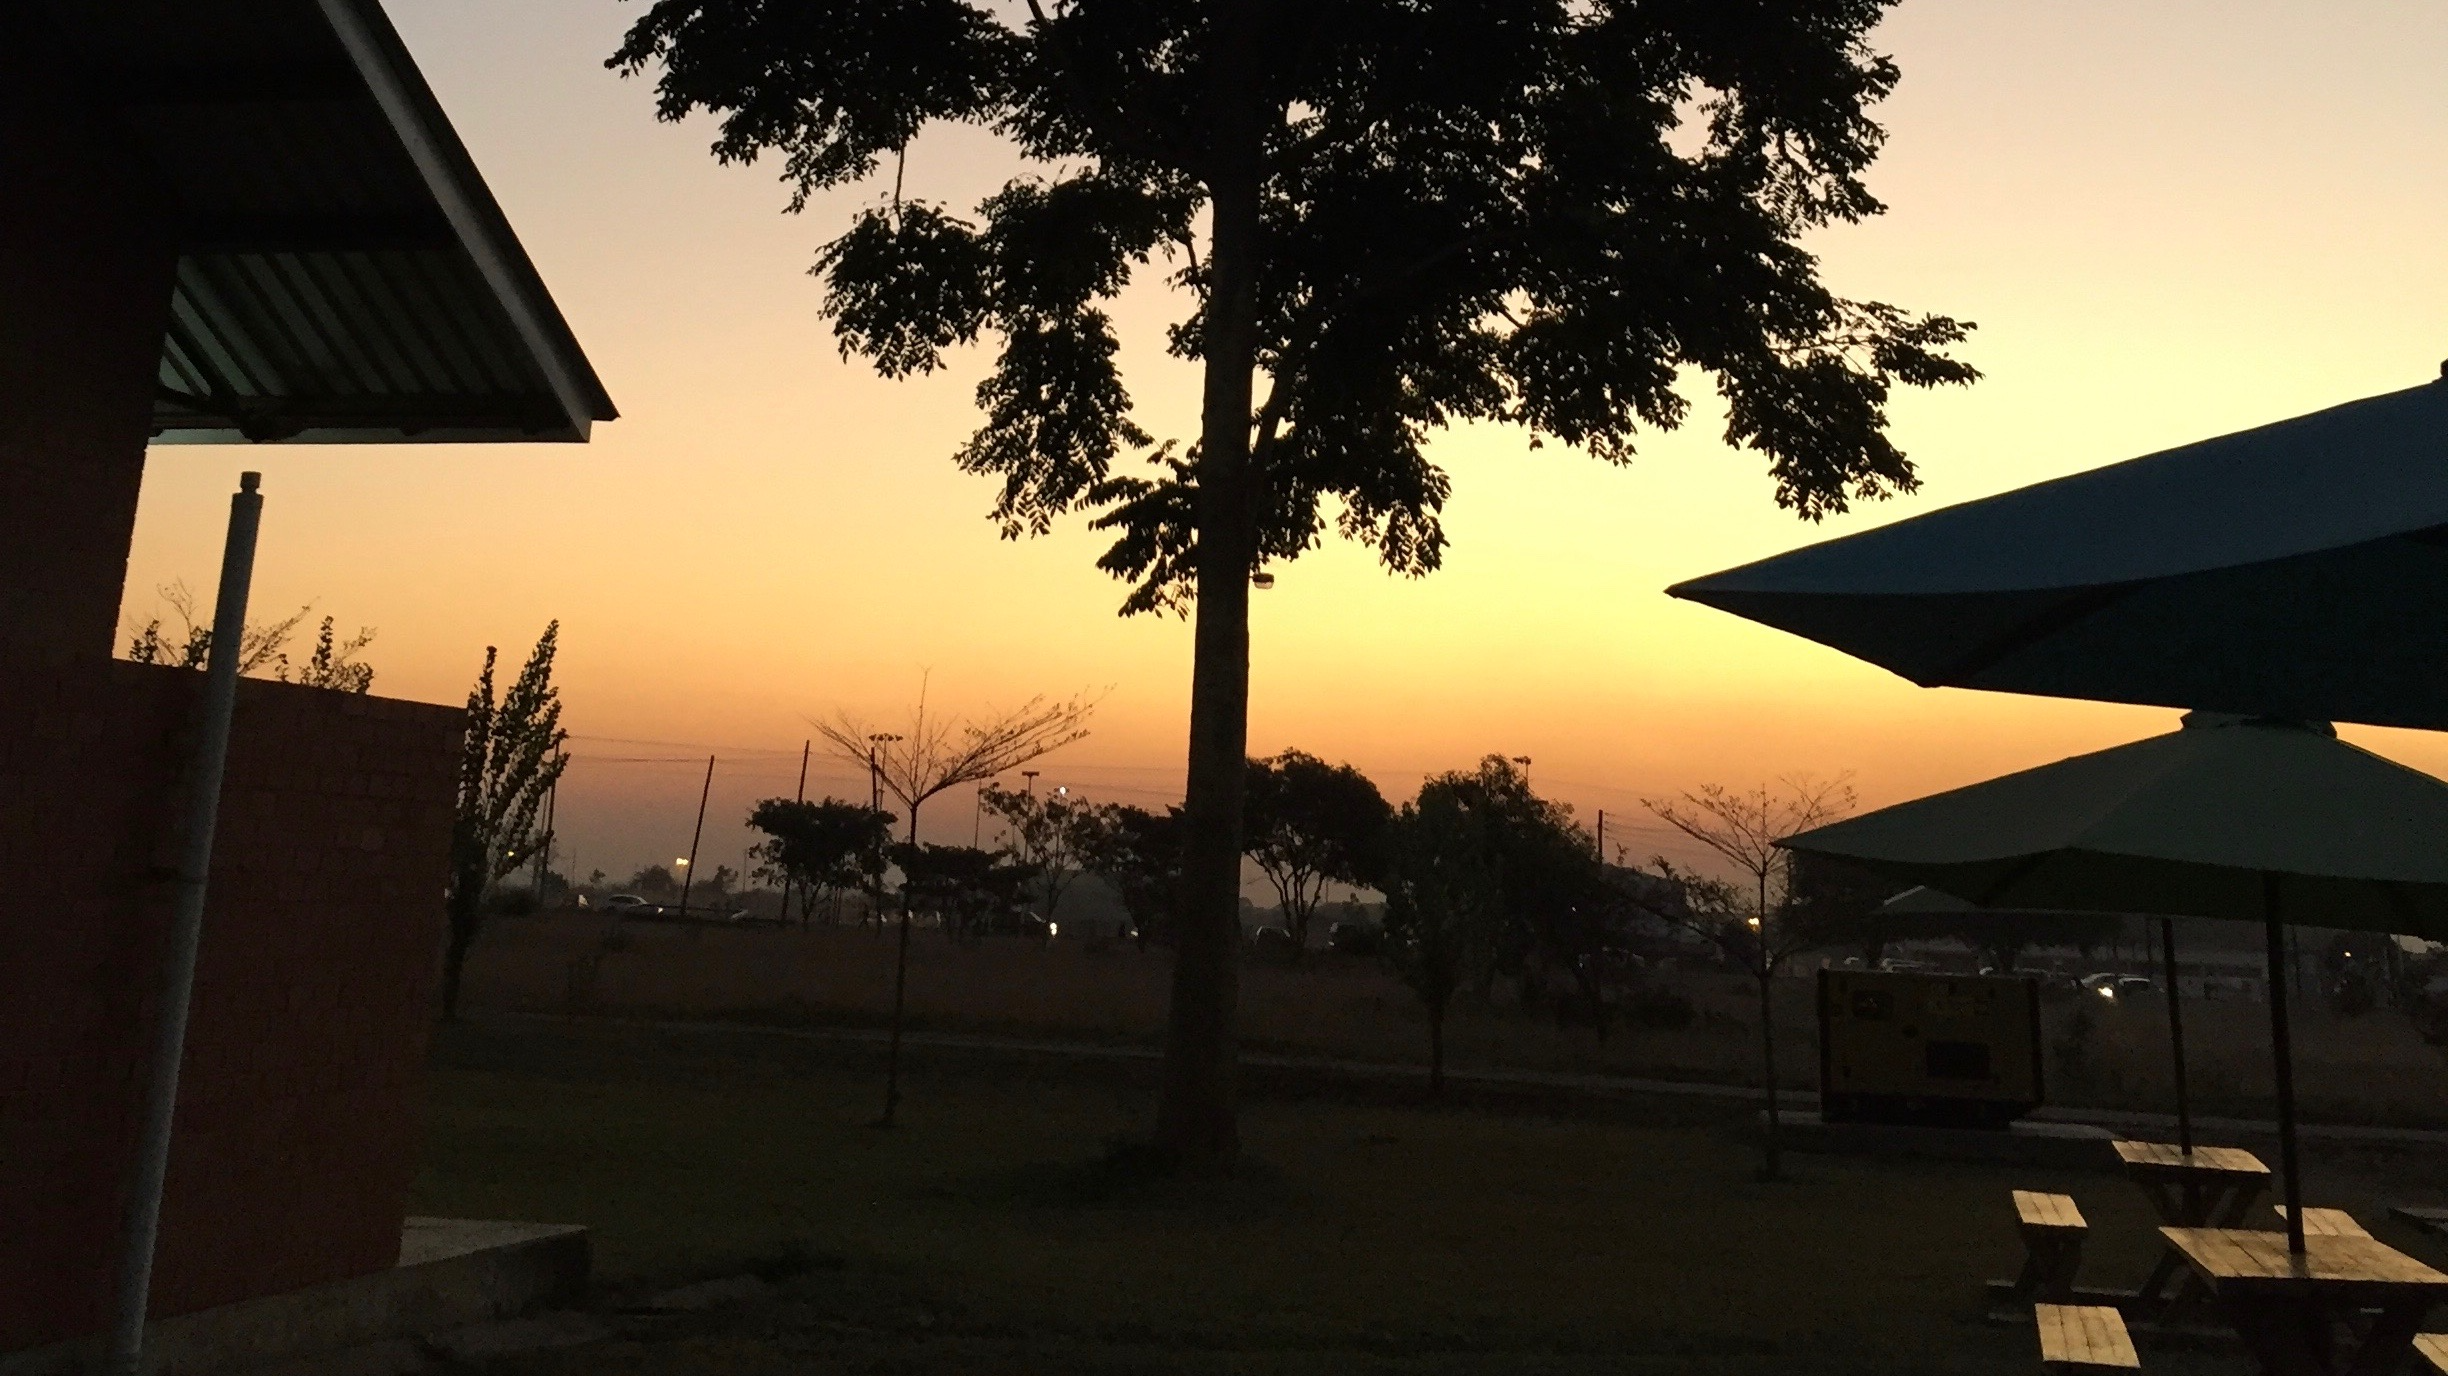 Zambia 071519 sunset.png